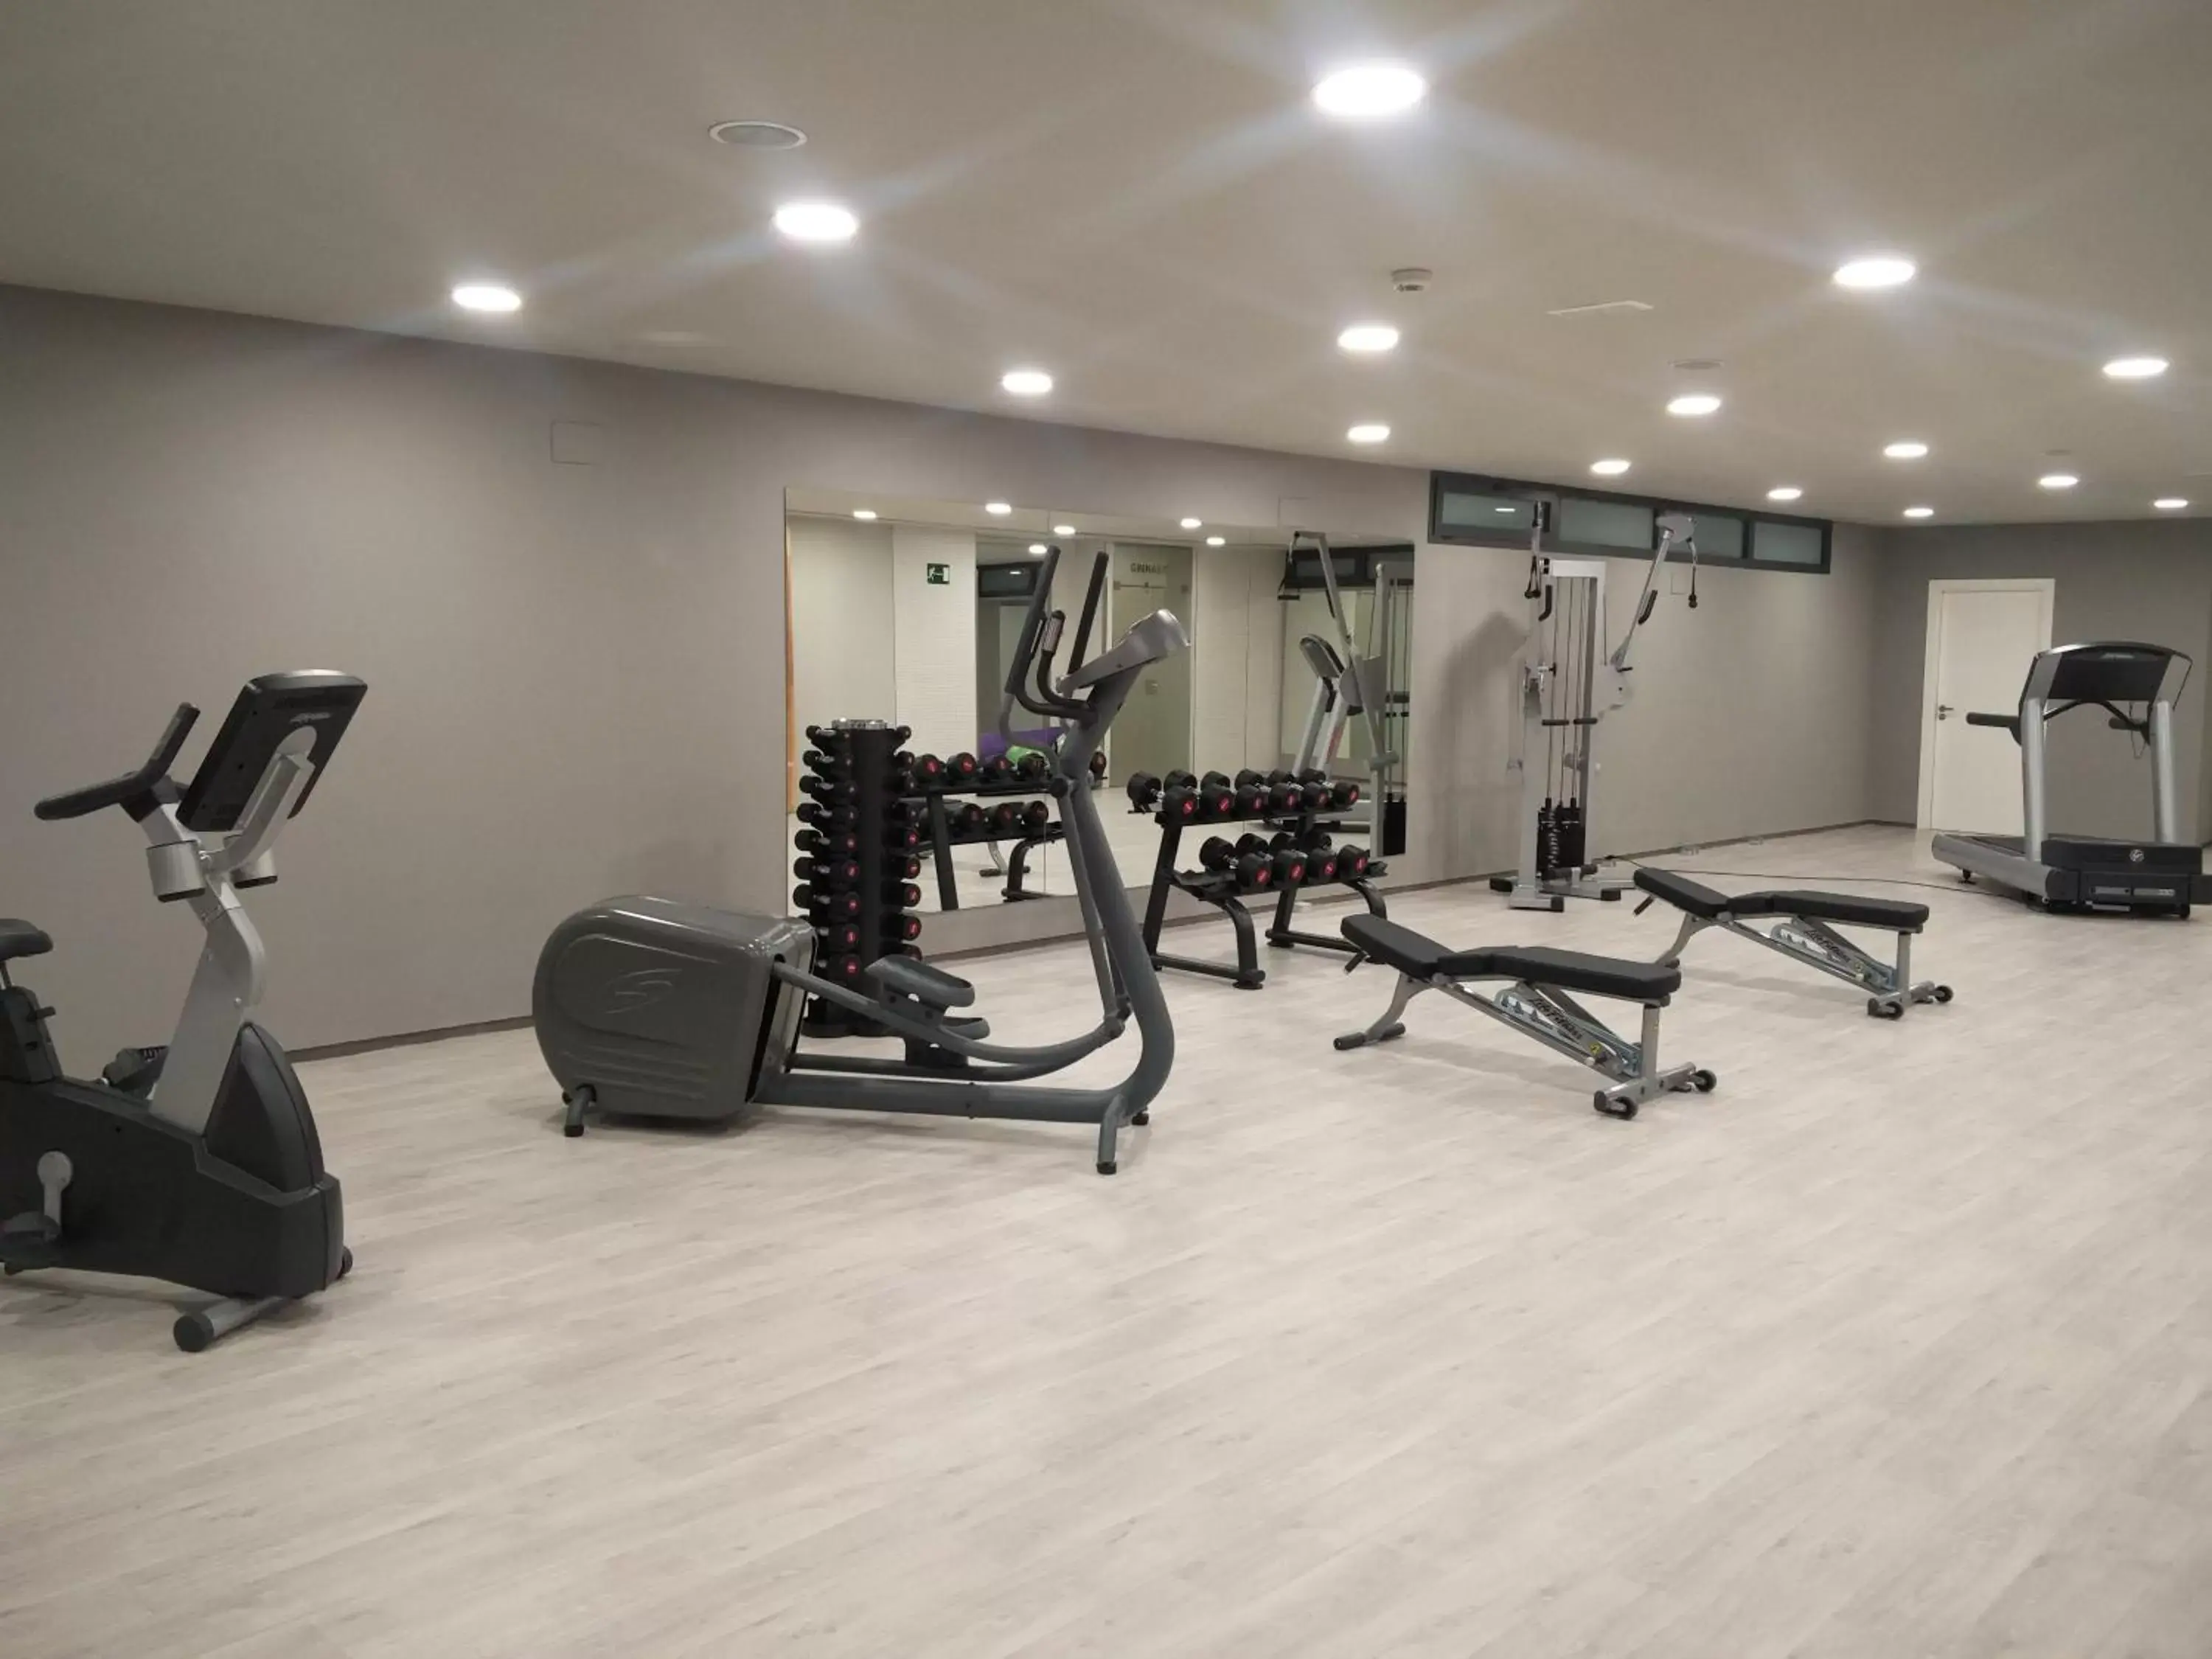 Fitness centre/facilities, Fitness Center/Facilities in Sercotel El Encin Golf